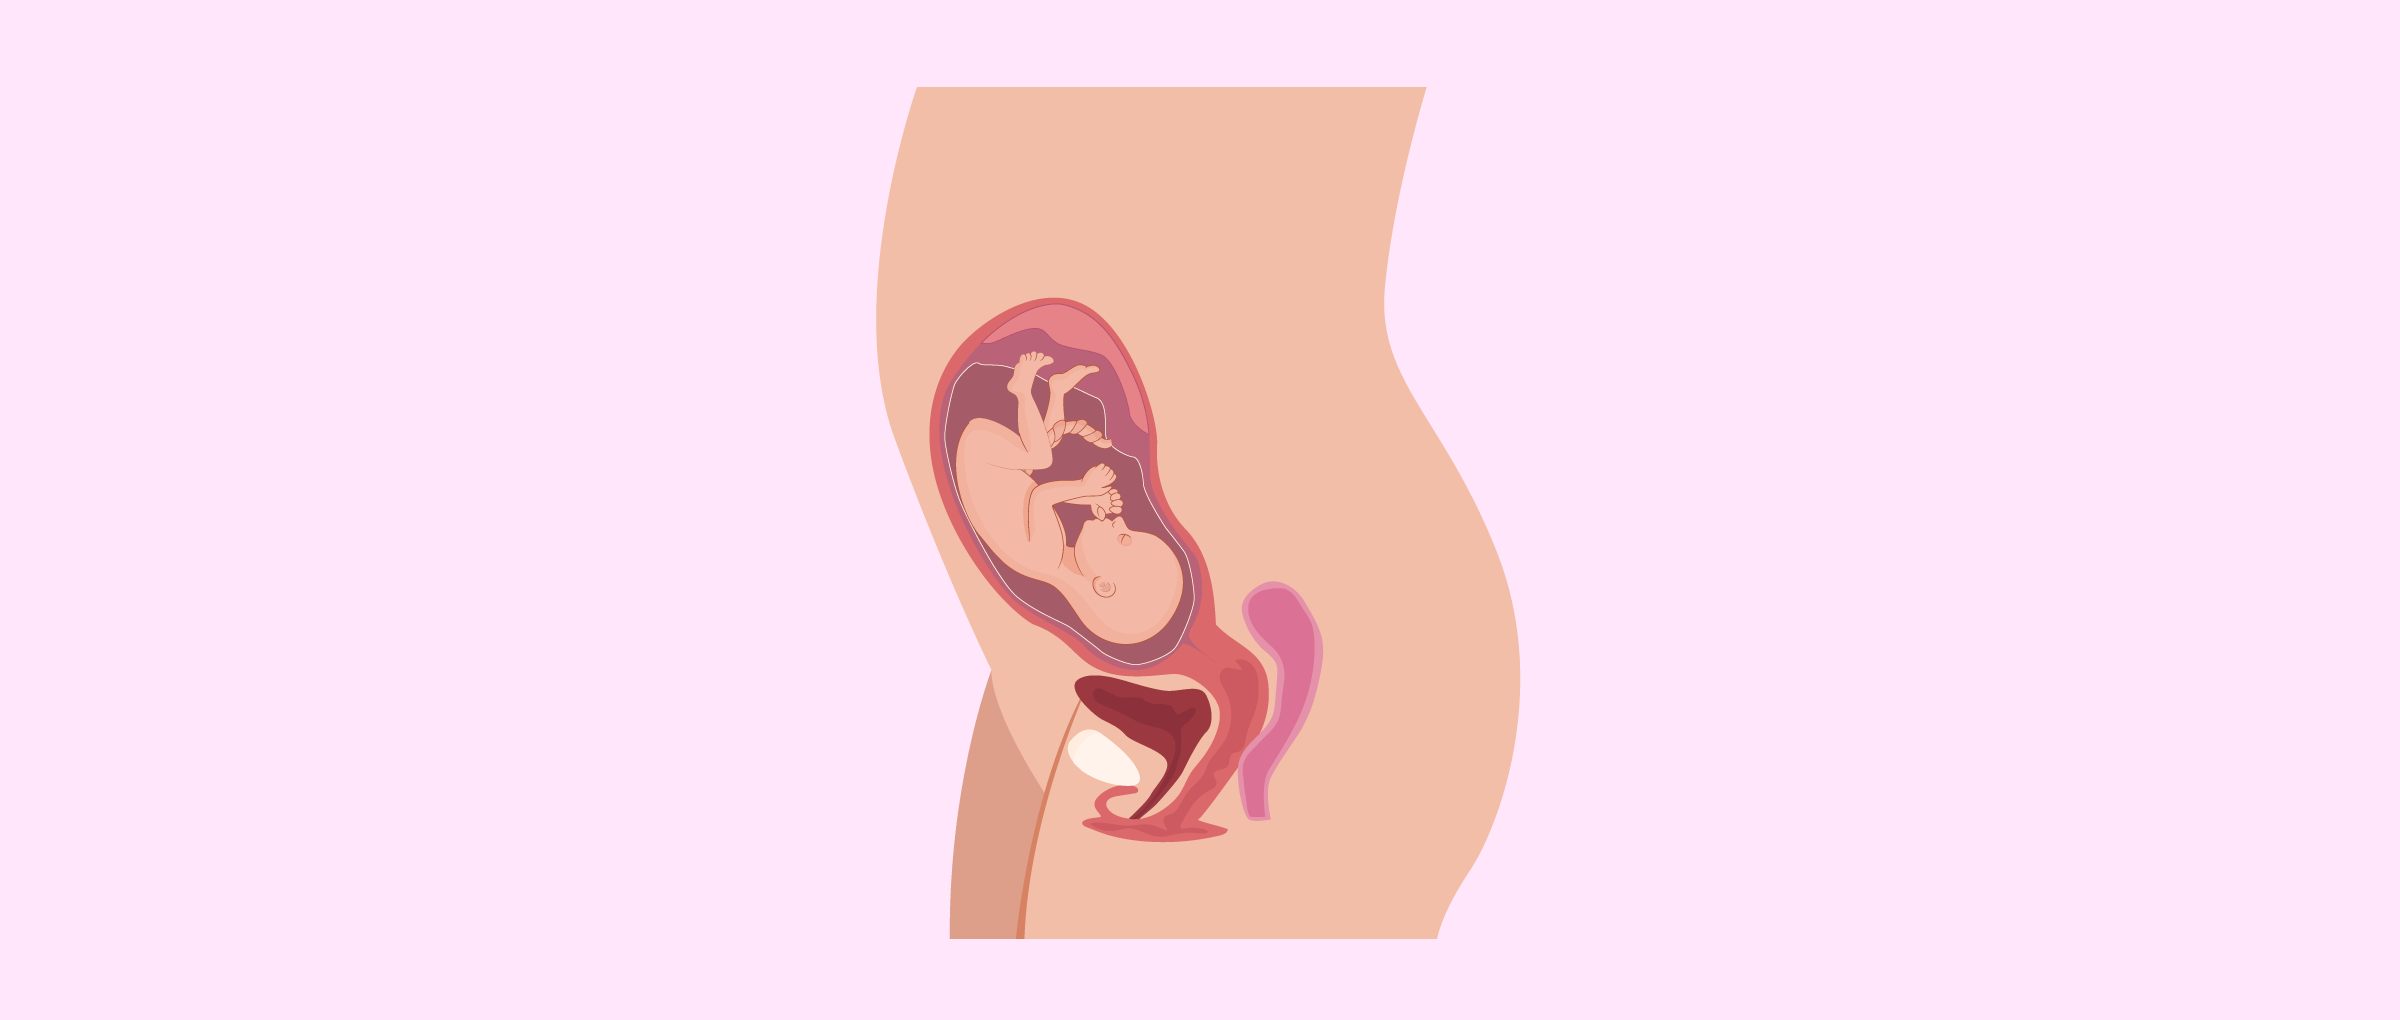 Le foetus est déjà formé au bout de 7 mois de grossesse